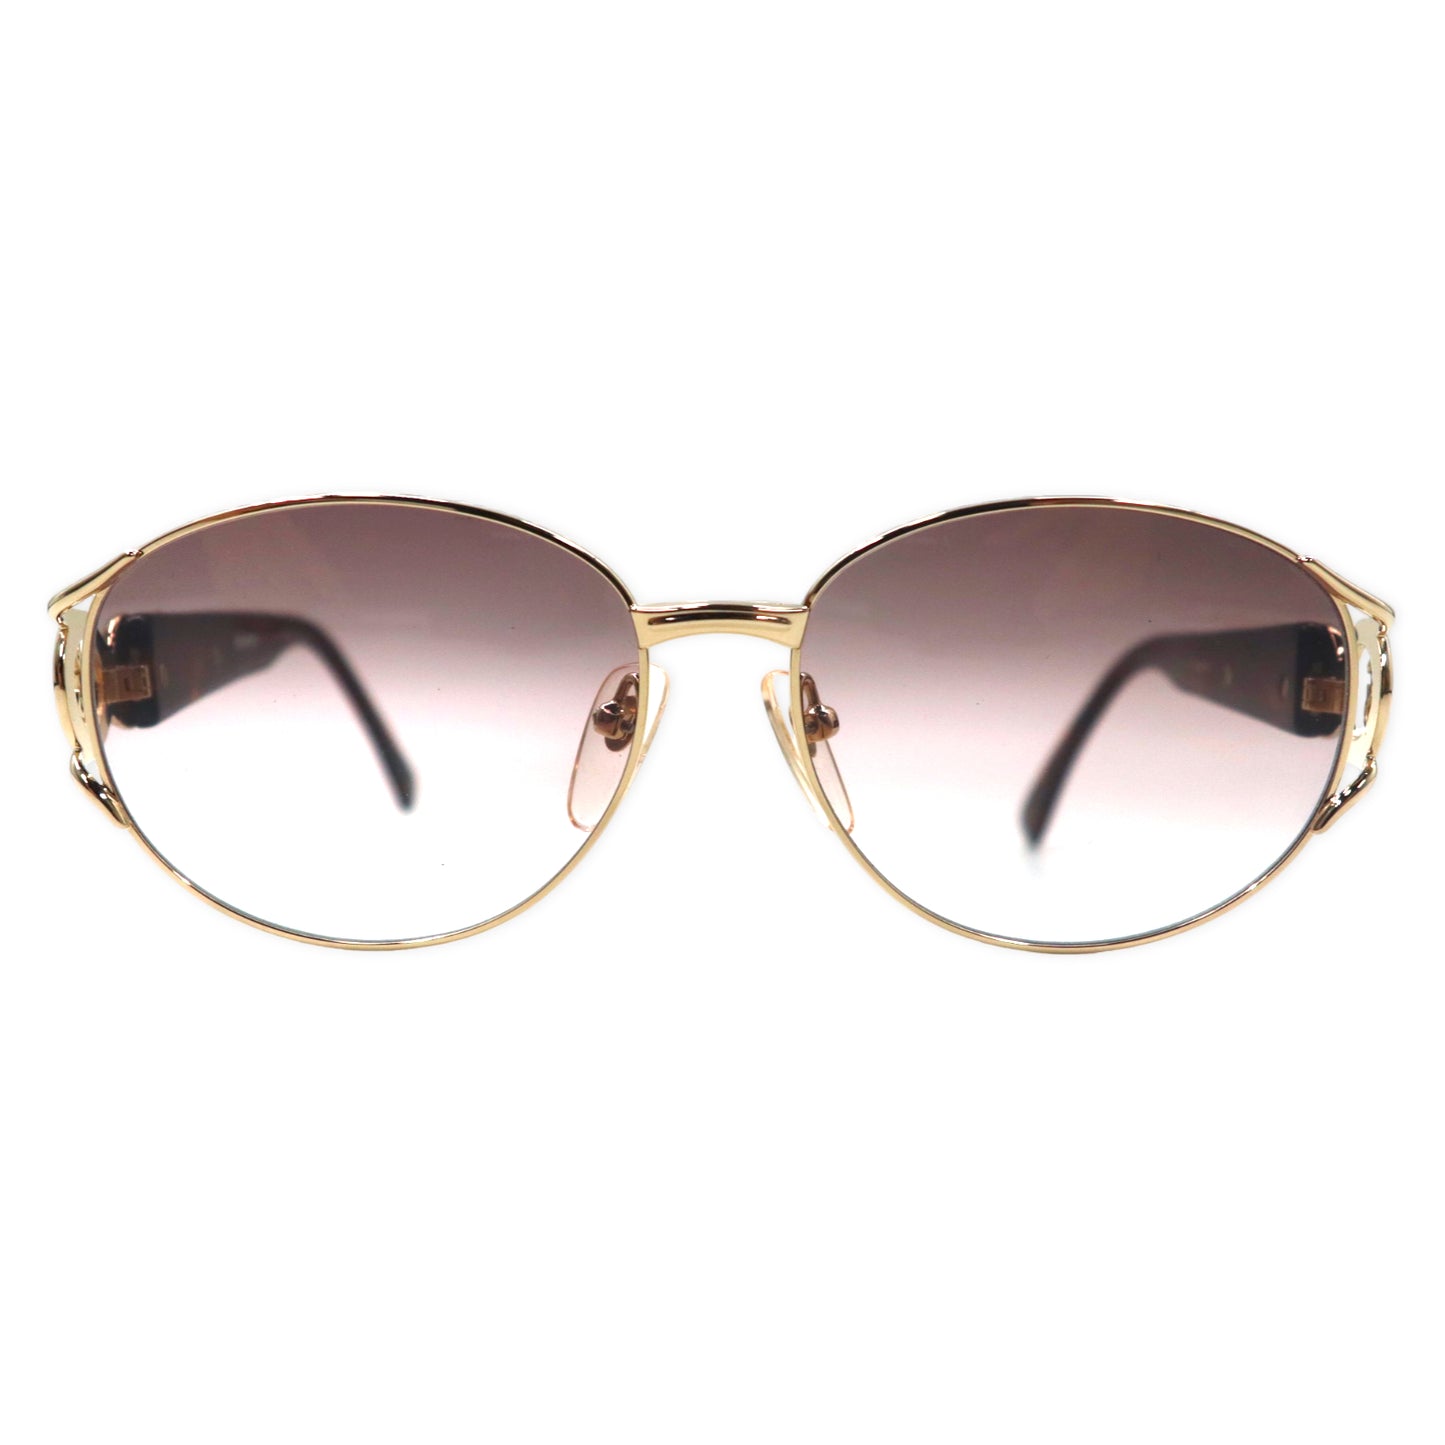 Yves Saint Laurent Sunglasses Gold Tortoiseshell Collar Lens UV